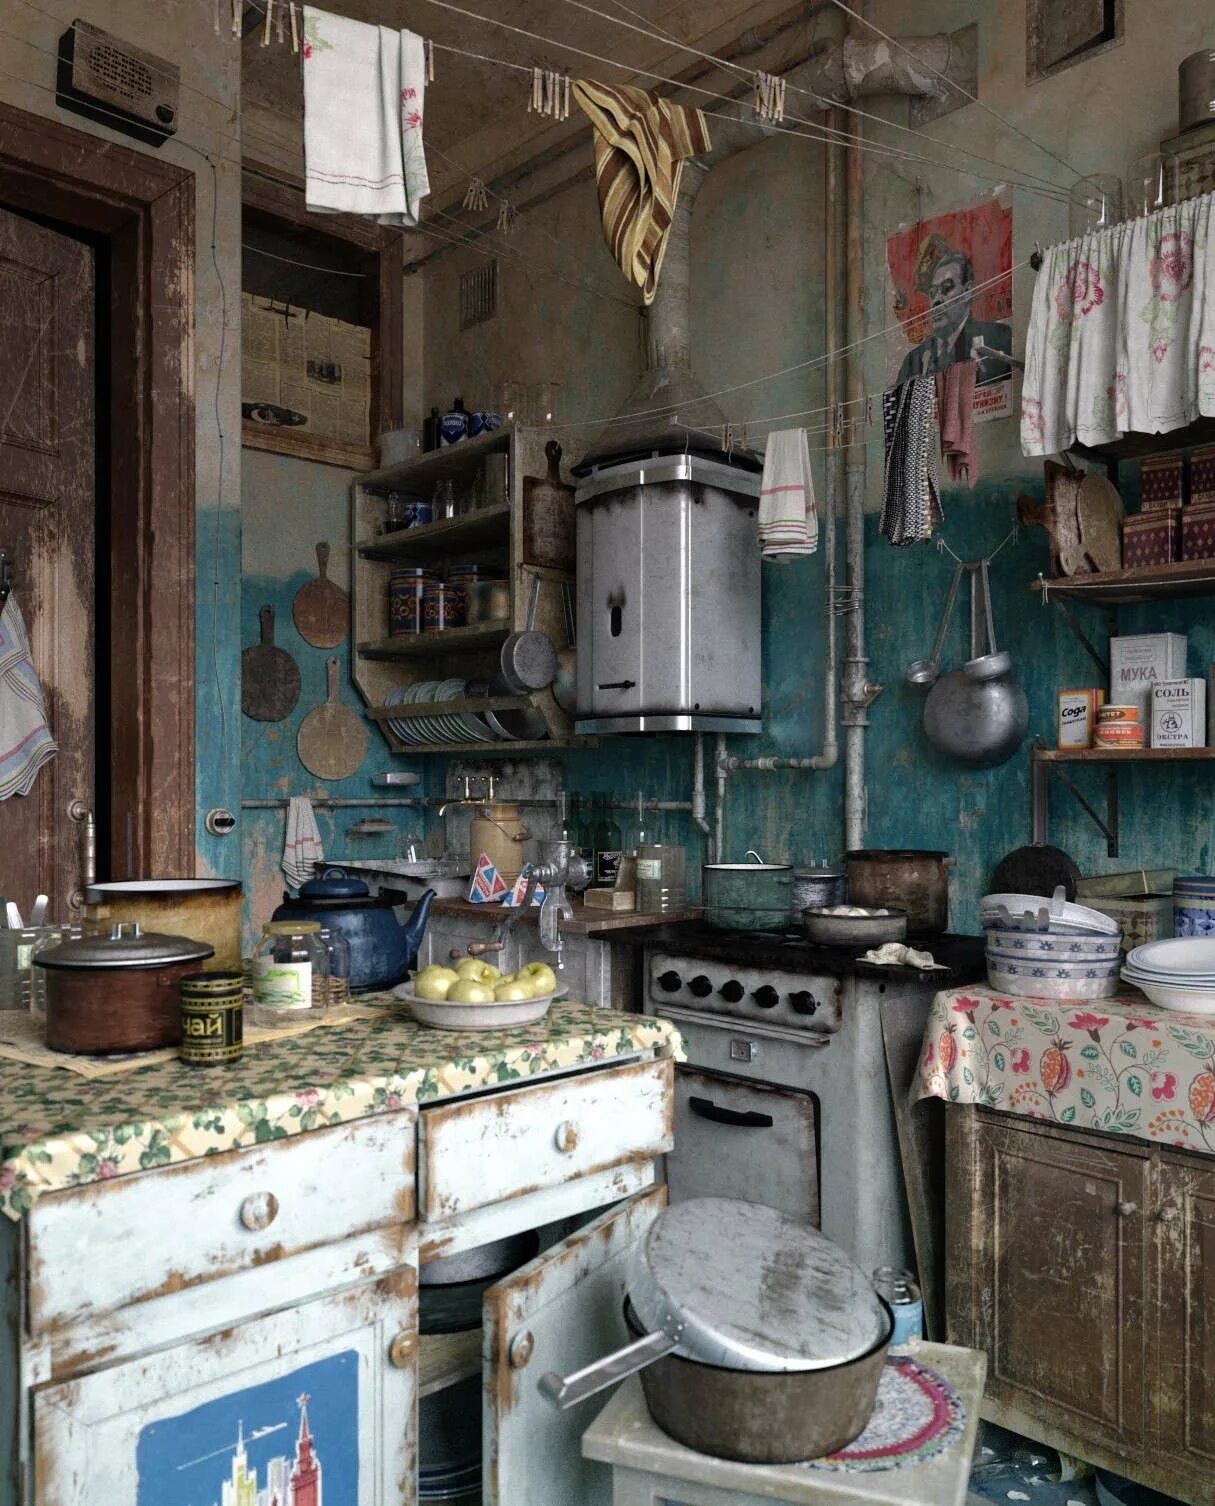 Коммуналка продажа. Кухня в Советской квартире. Кухня в Старом стиле. Кухня в стиле ретро. Советский интерьер.